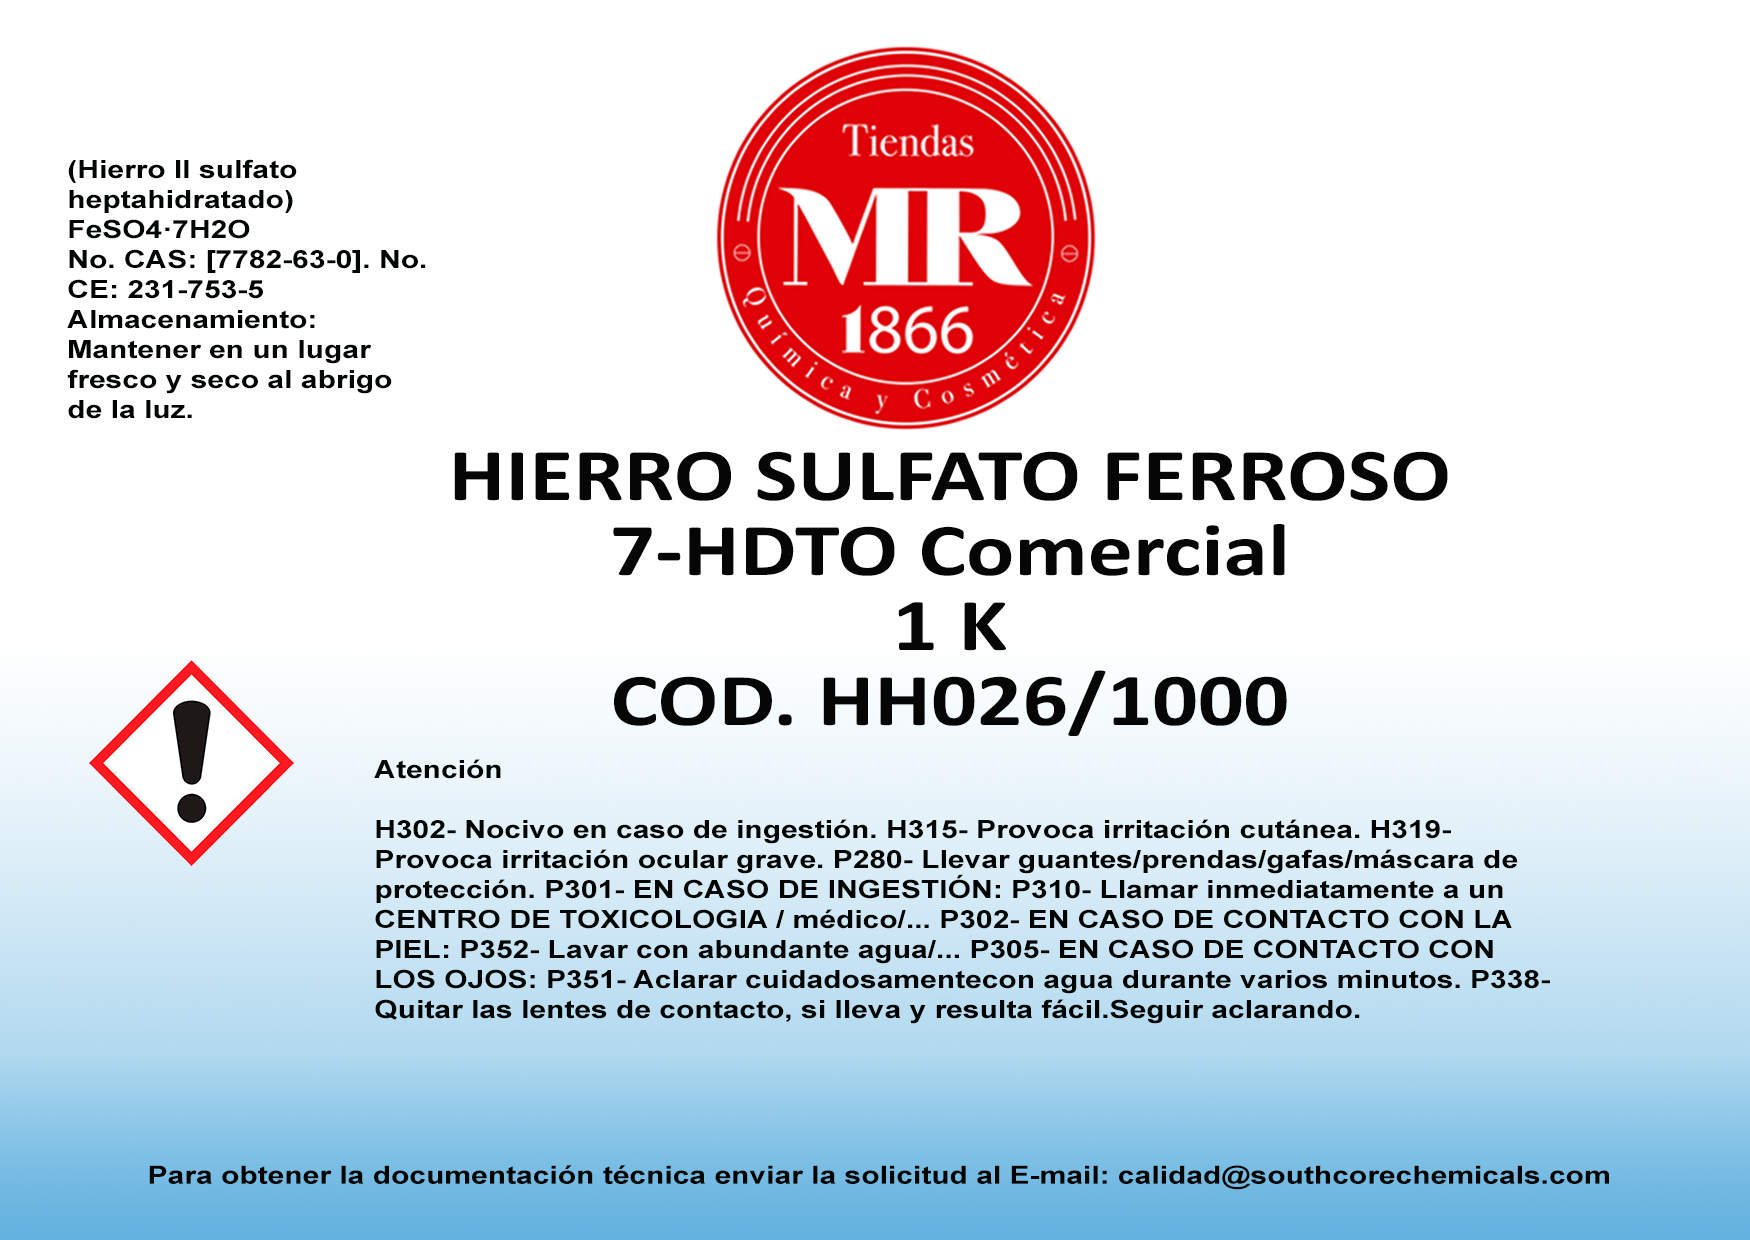 HIERRO SULFATO FERROSO 7-HDTO COMERCIAL 1 K